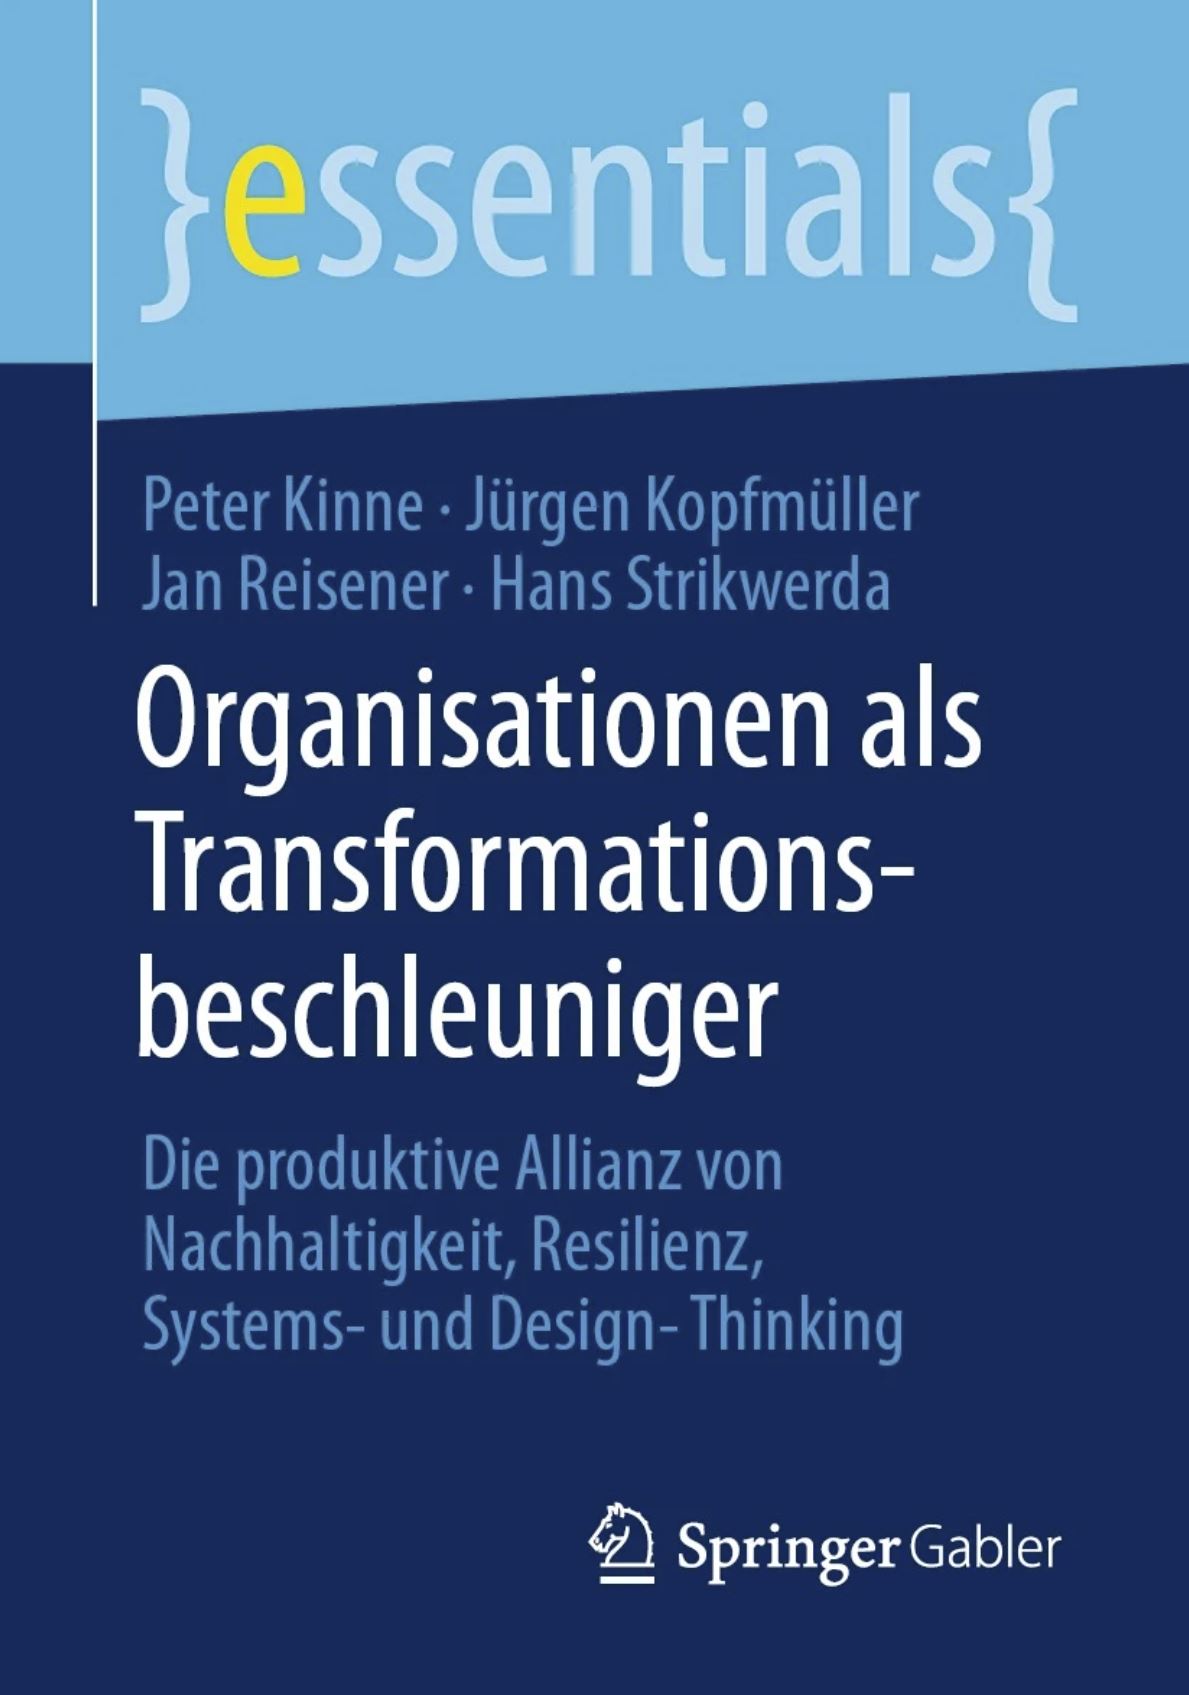 Cover der Publikation über Transformationsbeschleuniger